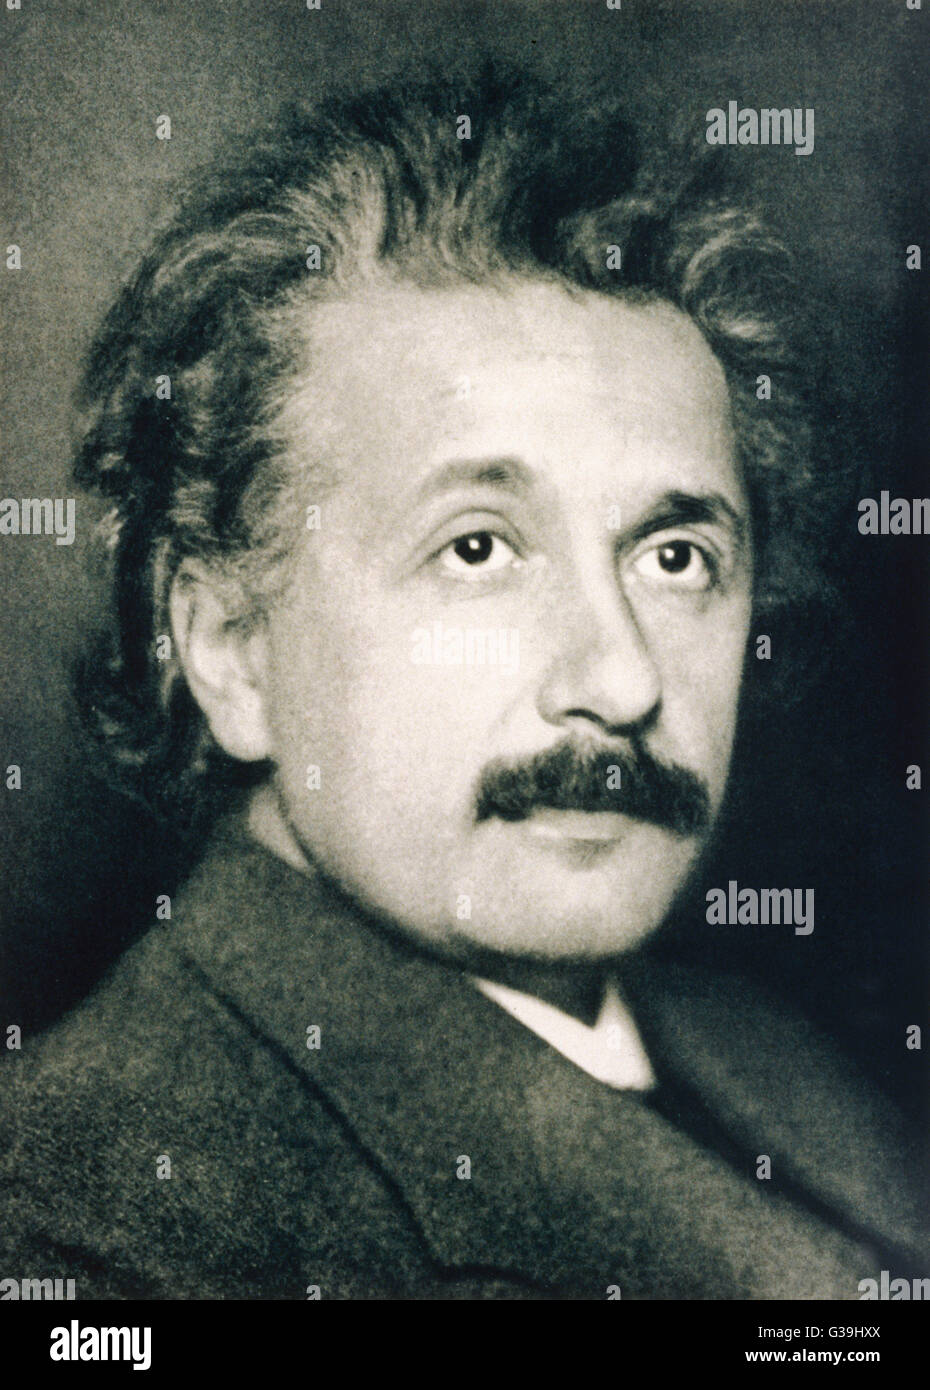 ALBERT EINSTEIN  German physicist  in 1921       Date: 1879 - 1955 Stock Photo